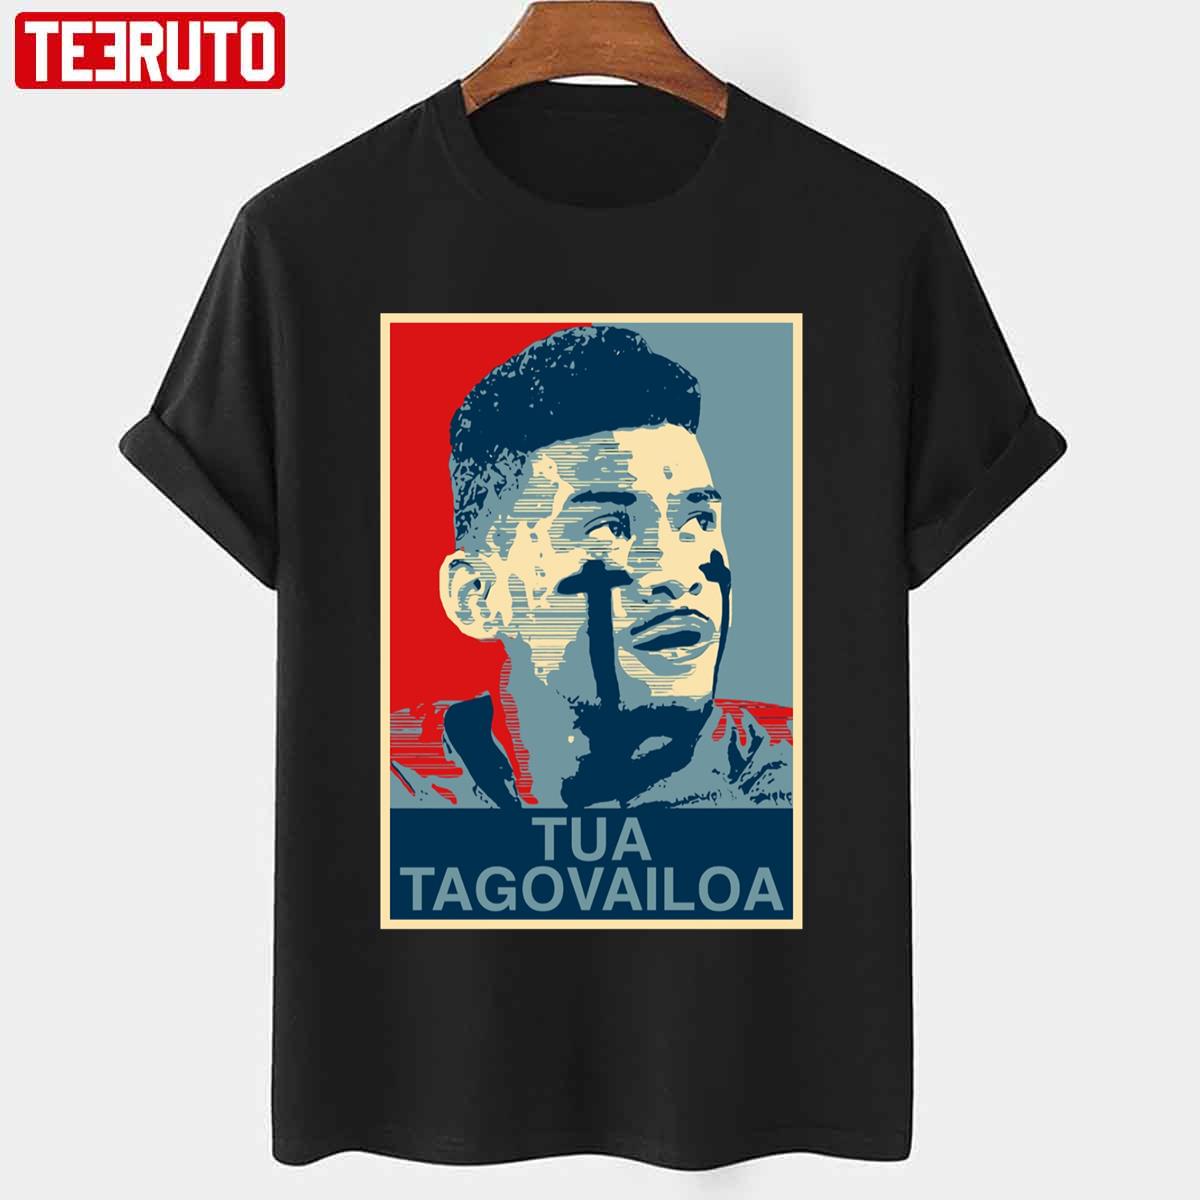 Tua Tago Vailoa Hope Unisex T-shirt